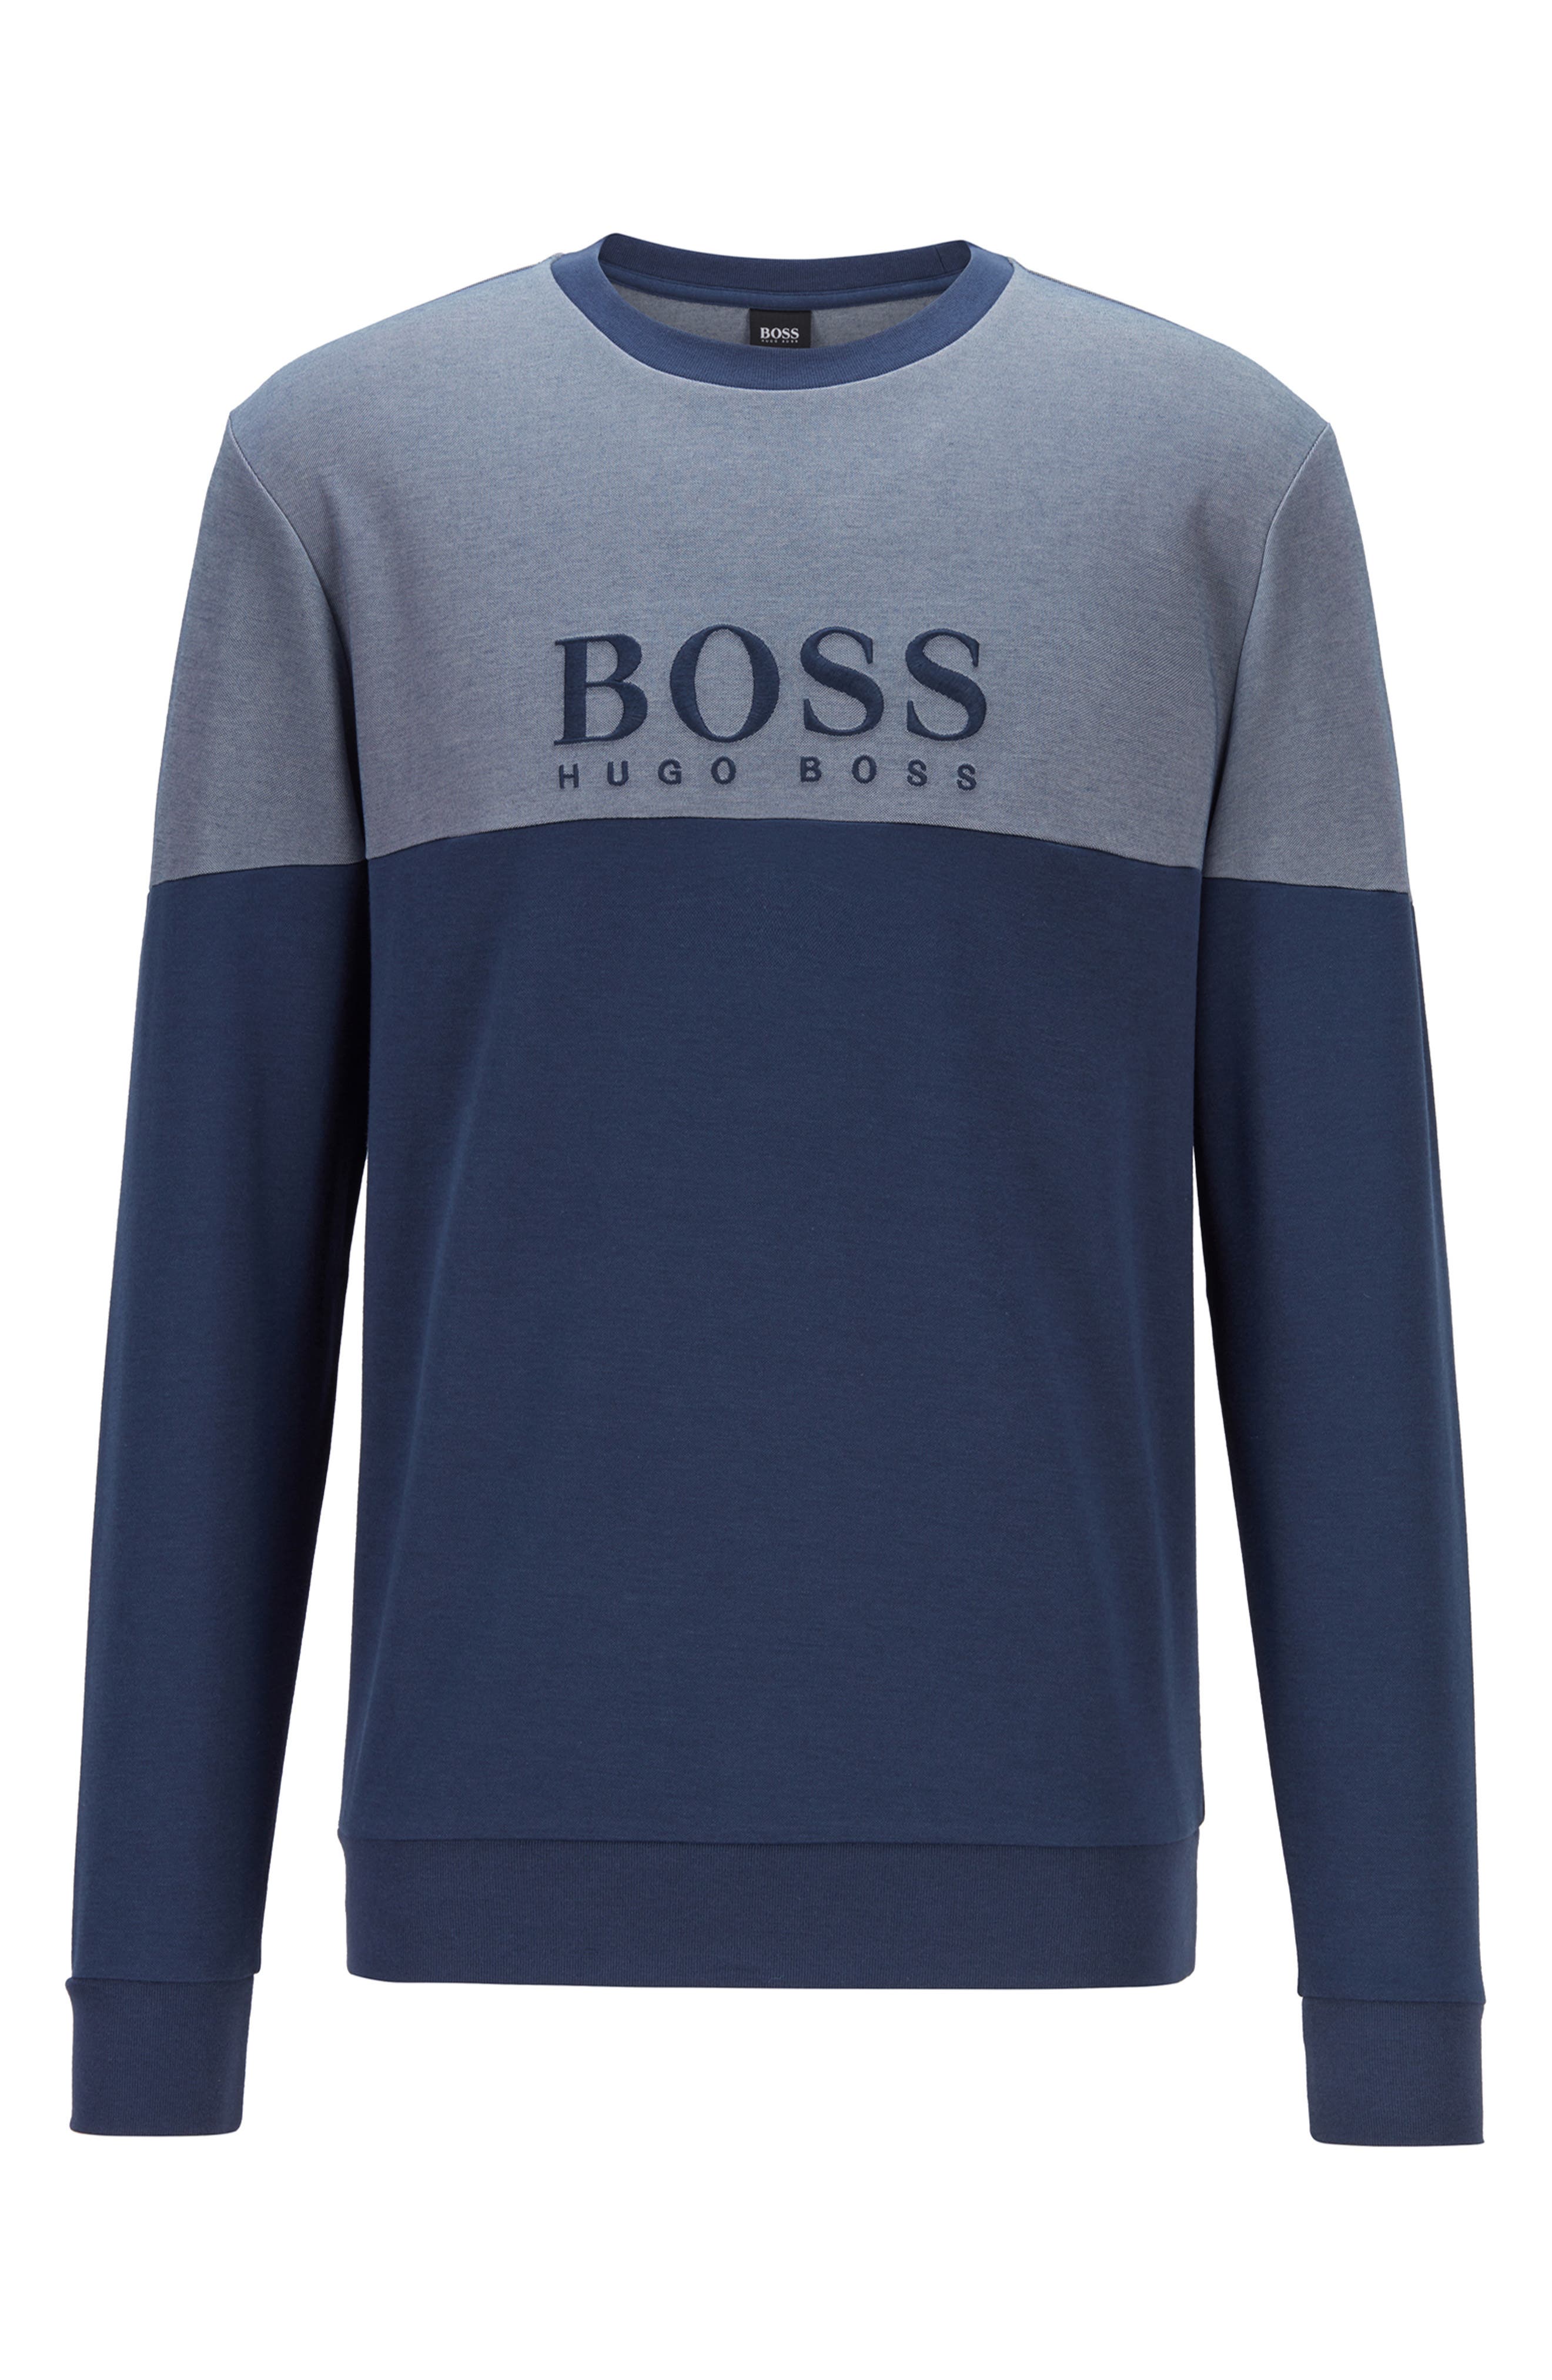 boss hoodie sale